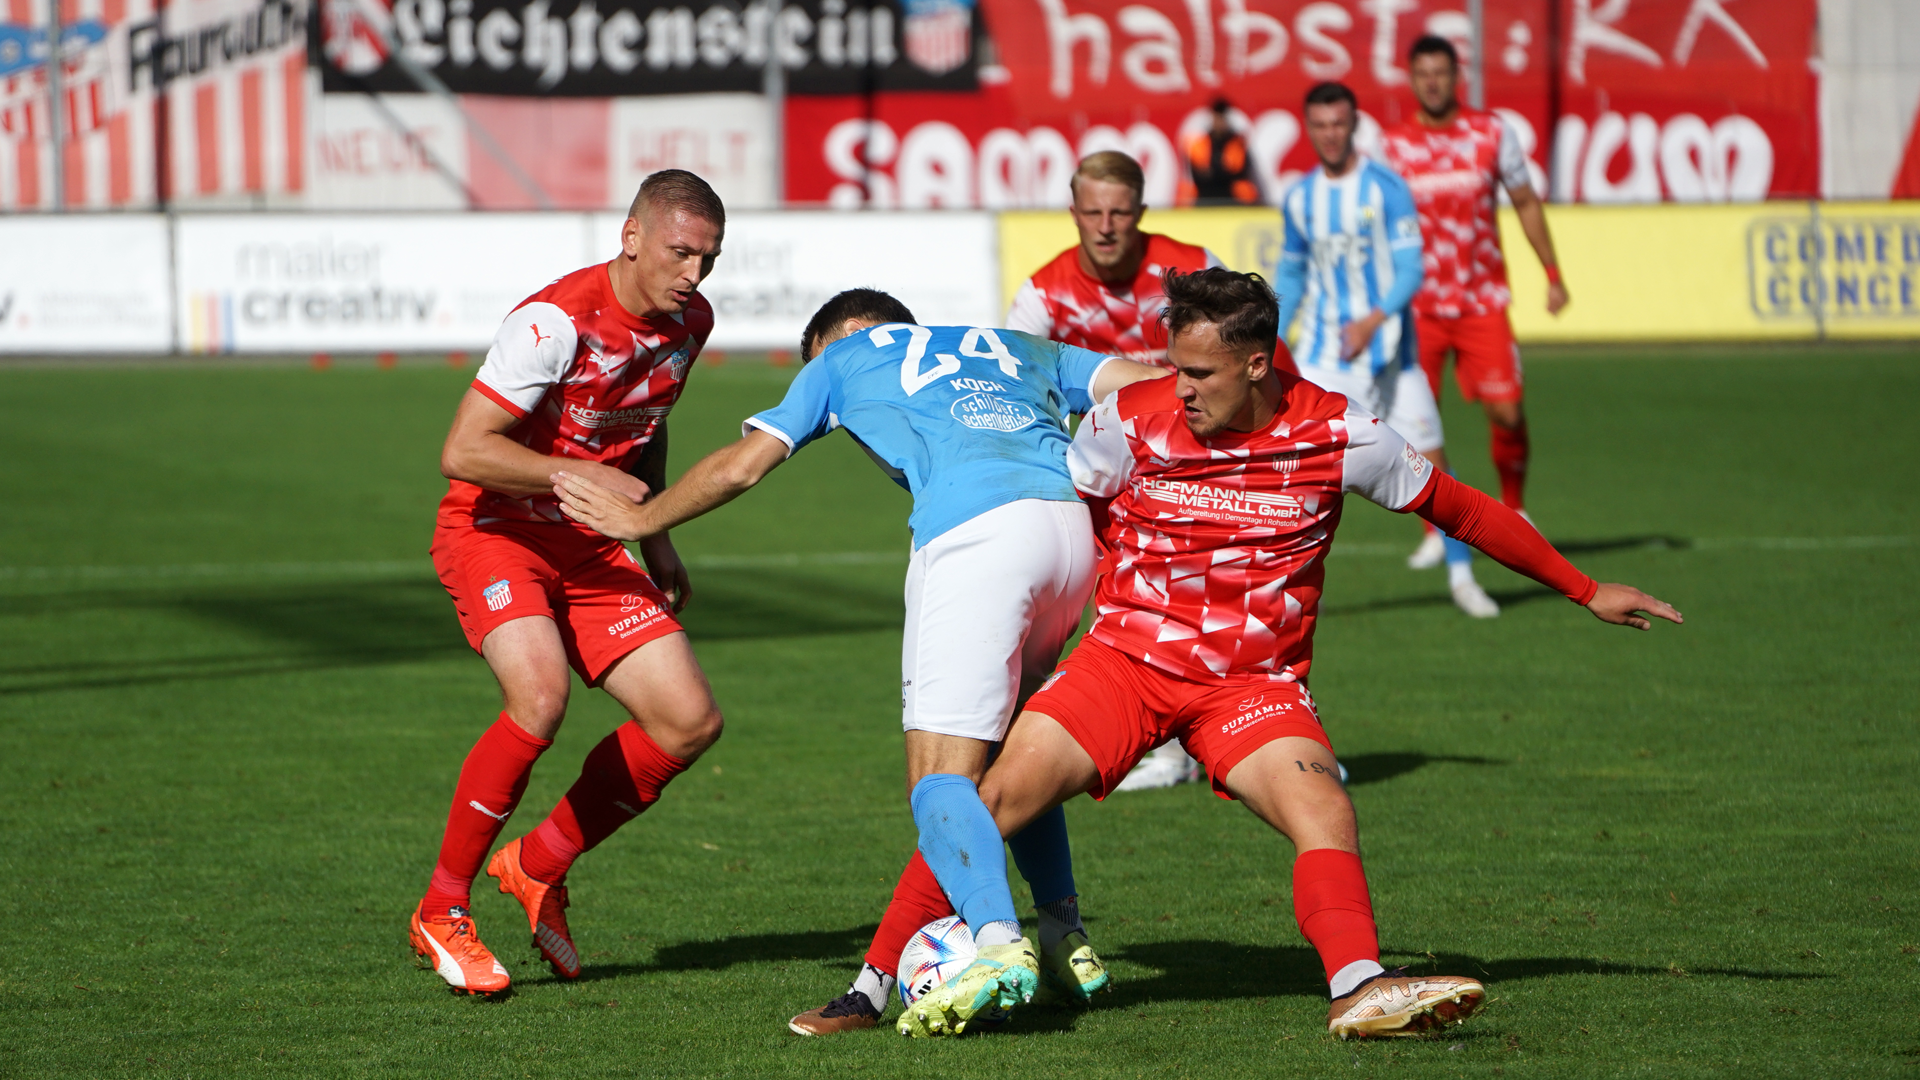 FSV Zwickau – Chemnitzer FC 1:2 (0:1) [10. Spieltag]